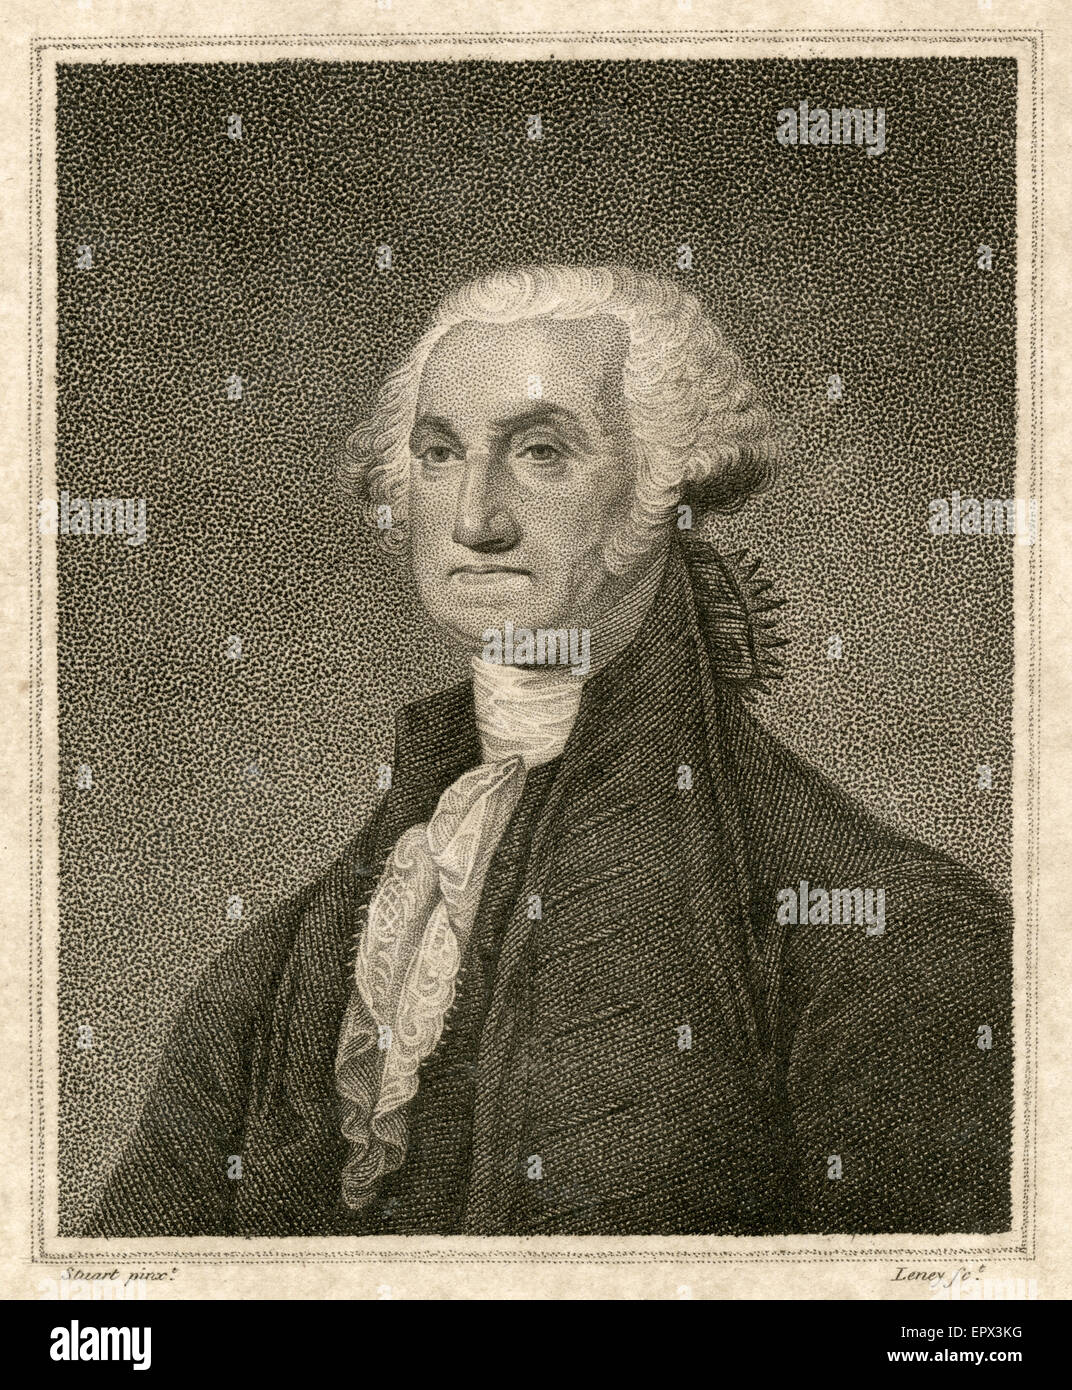 1812-Stahlstich von George Washington, nach Gilbert Stuart antike Malerei. George Washington (1732 Ð 1799) war der erste Präsident der Vereinigten Staaten (1789Ð97), der Oberbefehlshaber der Kontinentalarmee während des amerikanischen Unabhängigkeitskrieges, und einer der Gründerväter der Vereinigten Staaten. Stockfoto